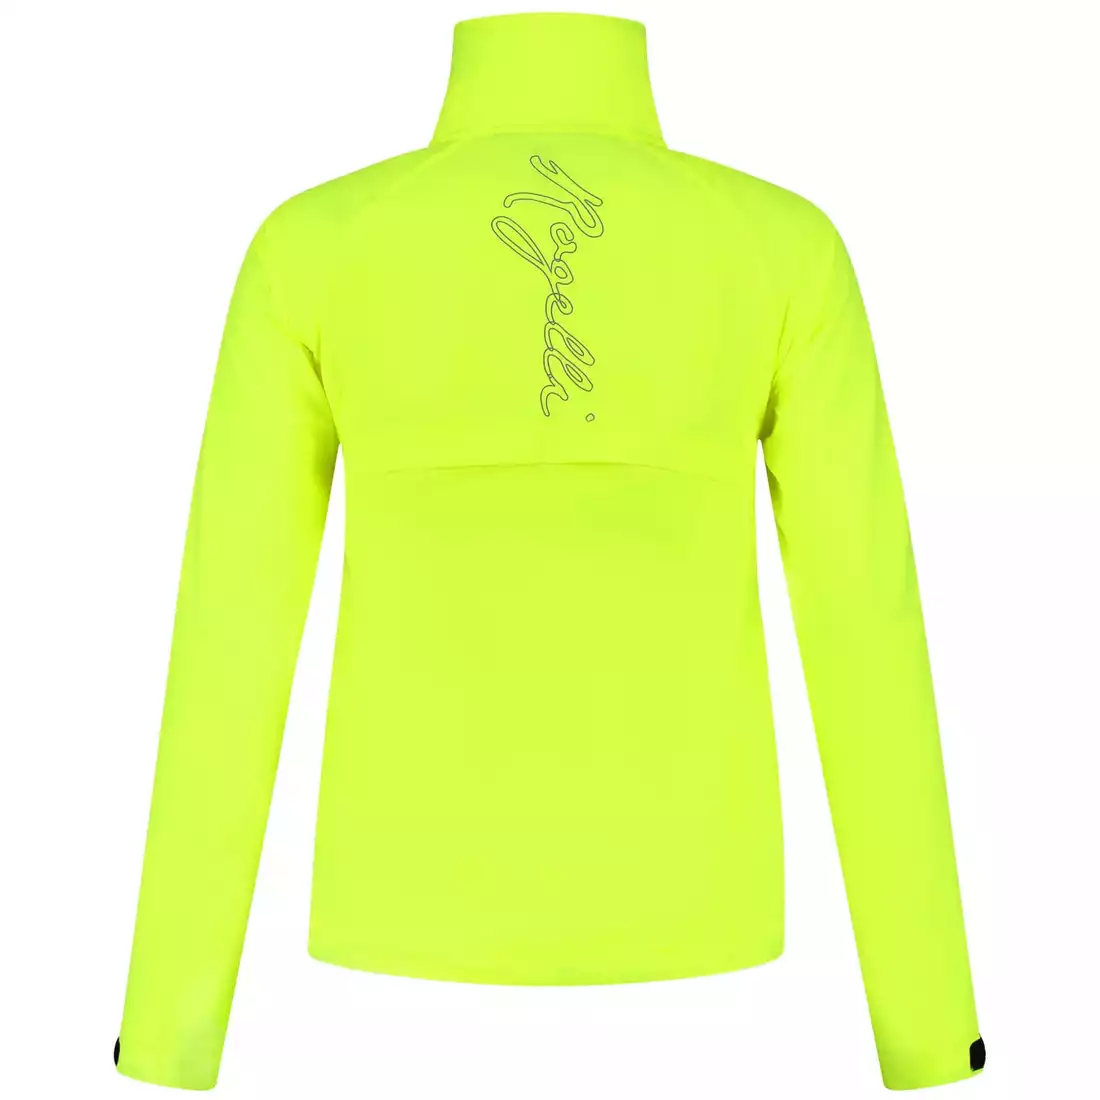 Rogelli CORE women's jacket, windbreaker for running, fluorine